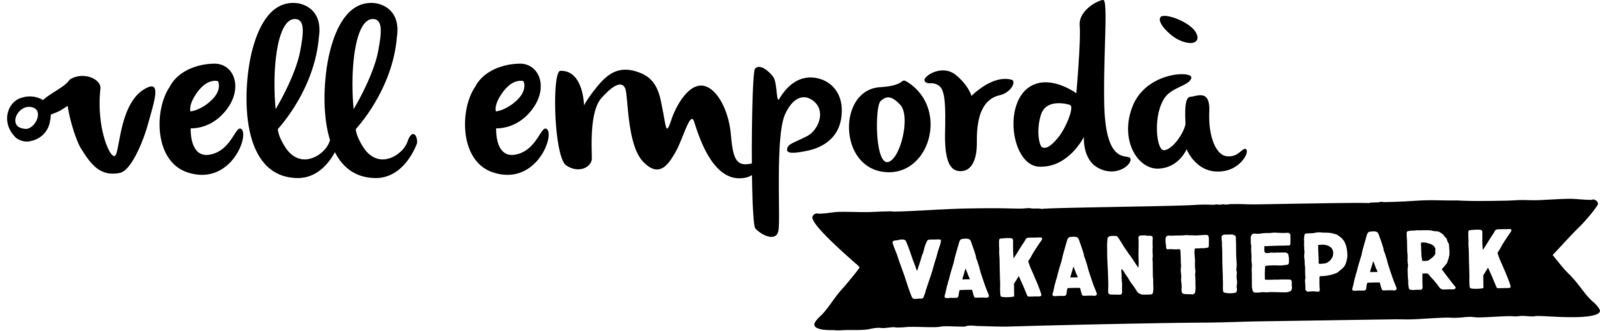 Logo Vell Emporda